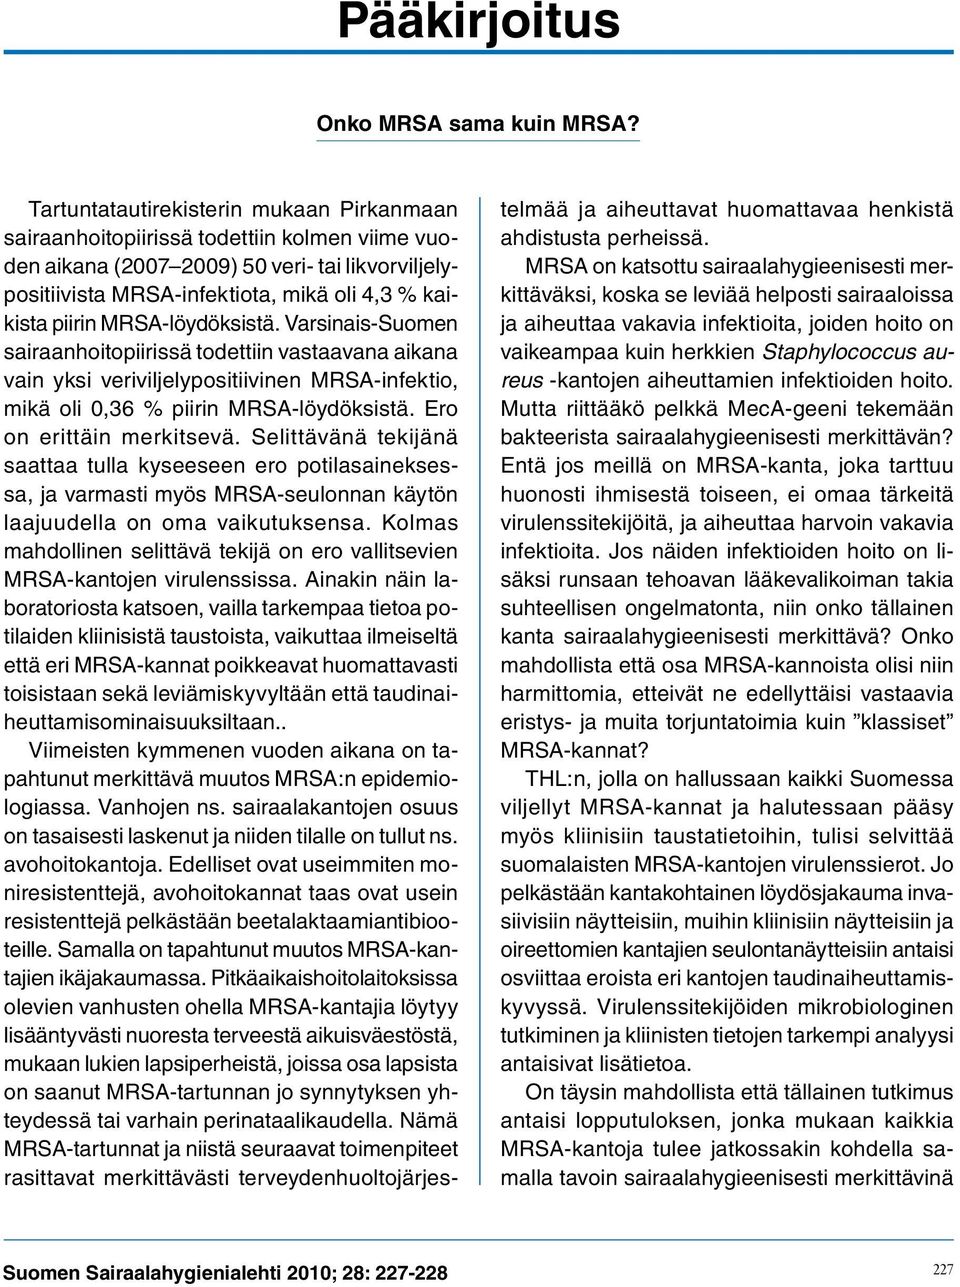 MRSA-löydöksistä. Varsinais-Suomen sairaanhoitopiirissä todettiin vastaavana aikana vain yksi veriviljelypositiivinen MRSA-infektio, mikä oli 0,36 % piirin MRSA-löydöksistä.